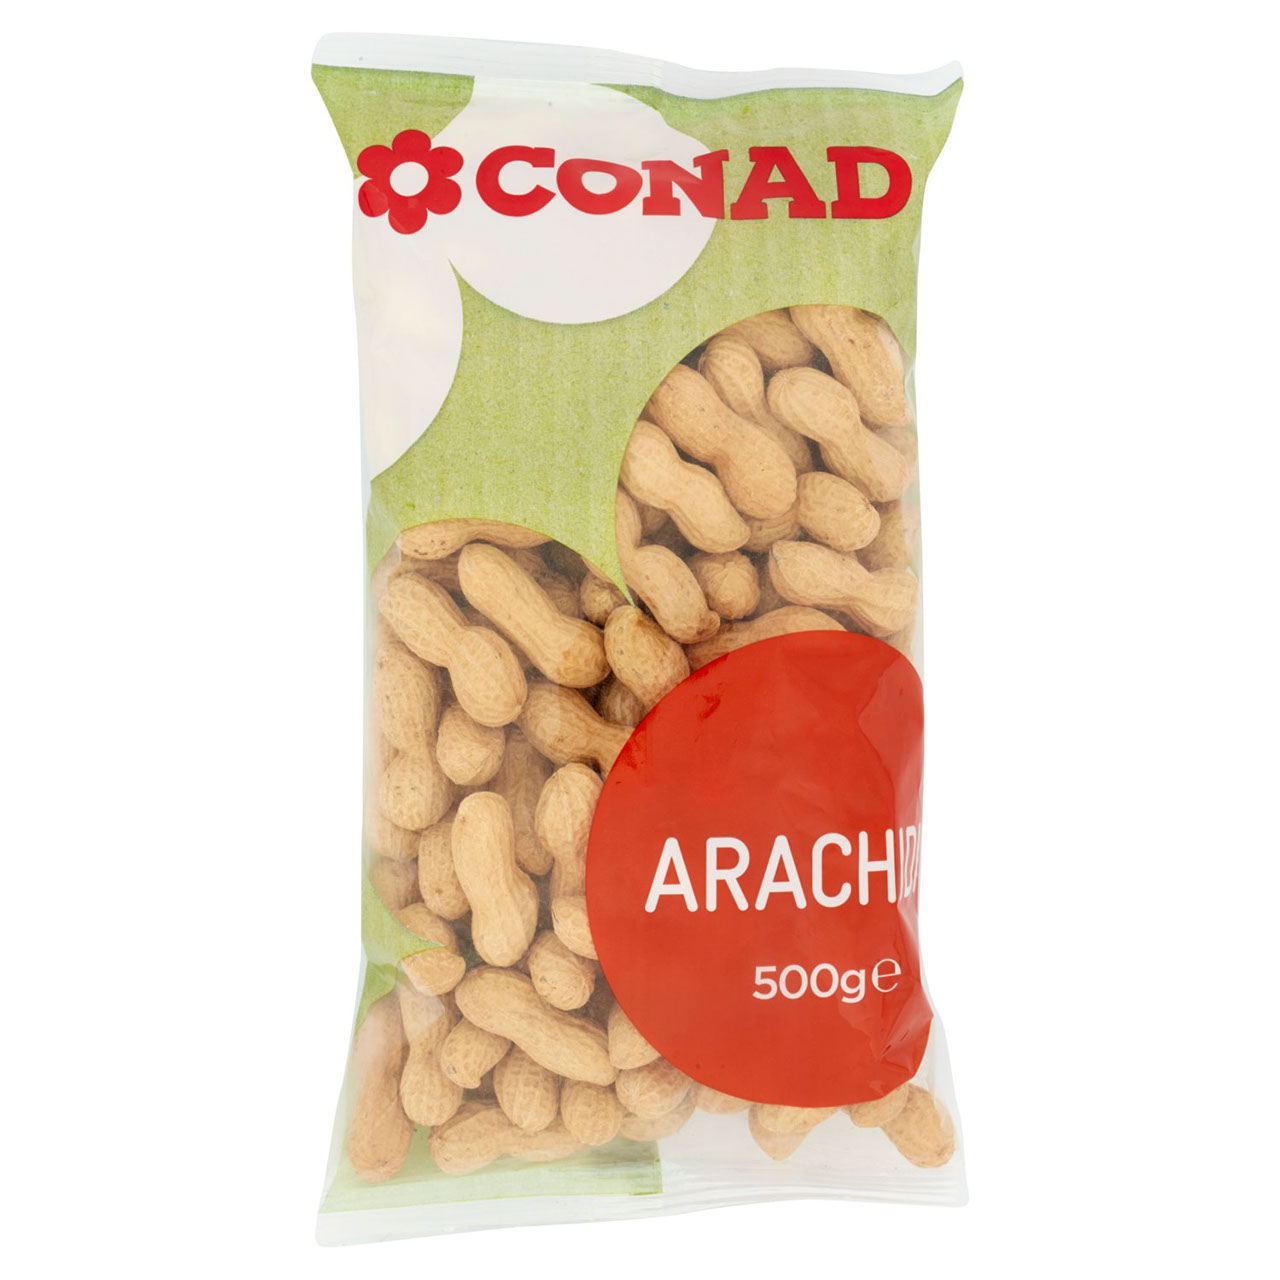 Arachidi 500 g Conad in vendita online